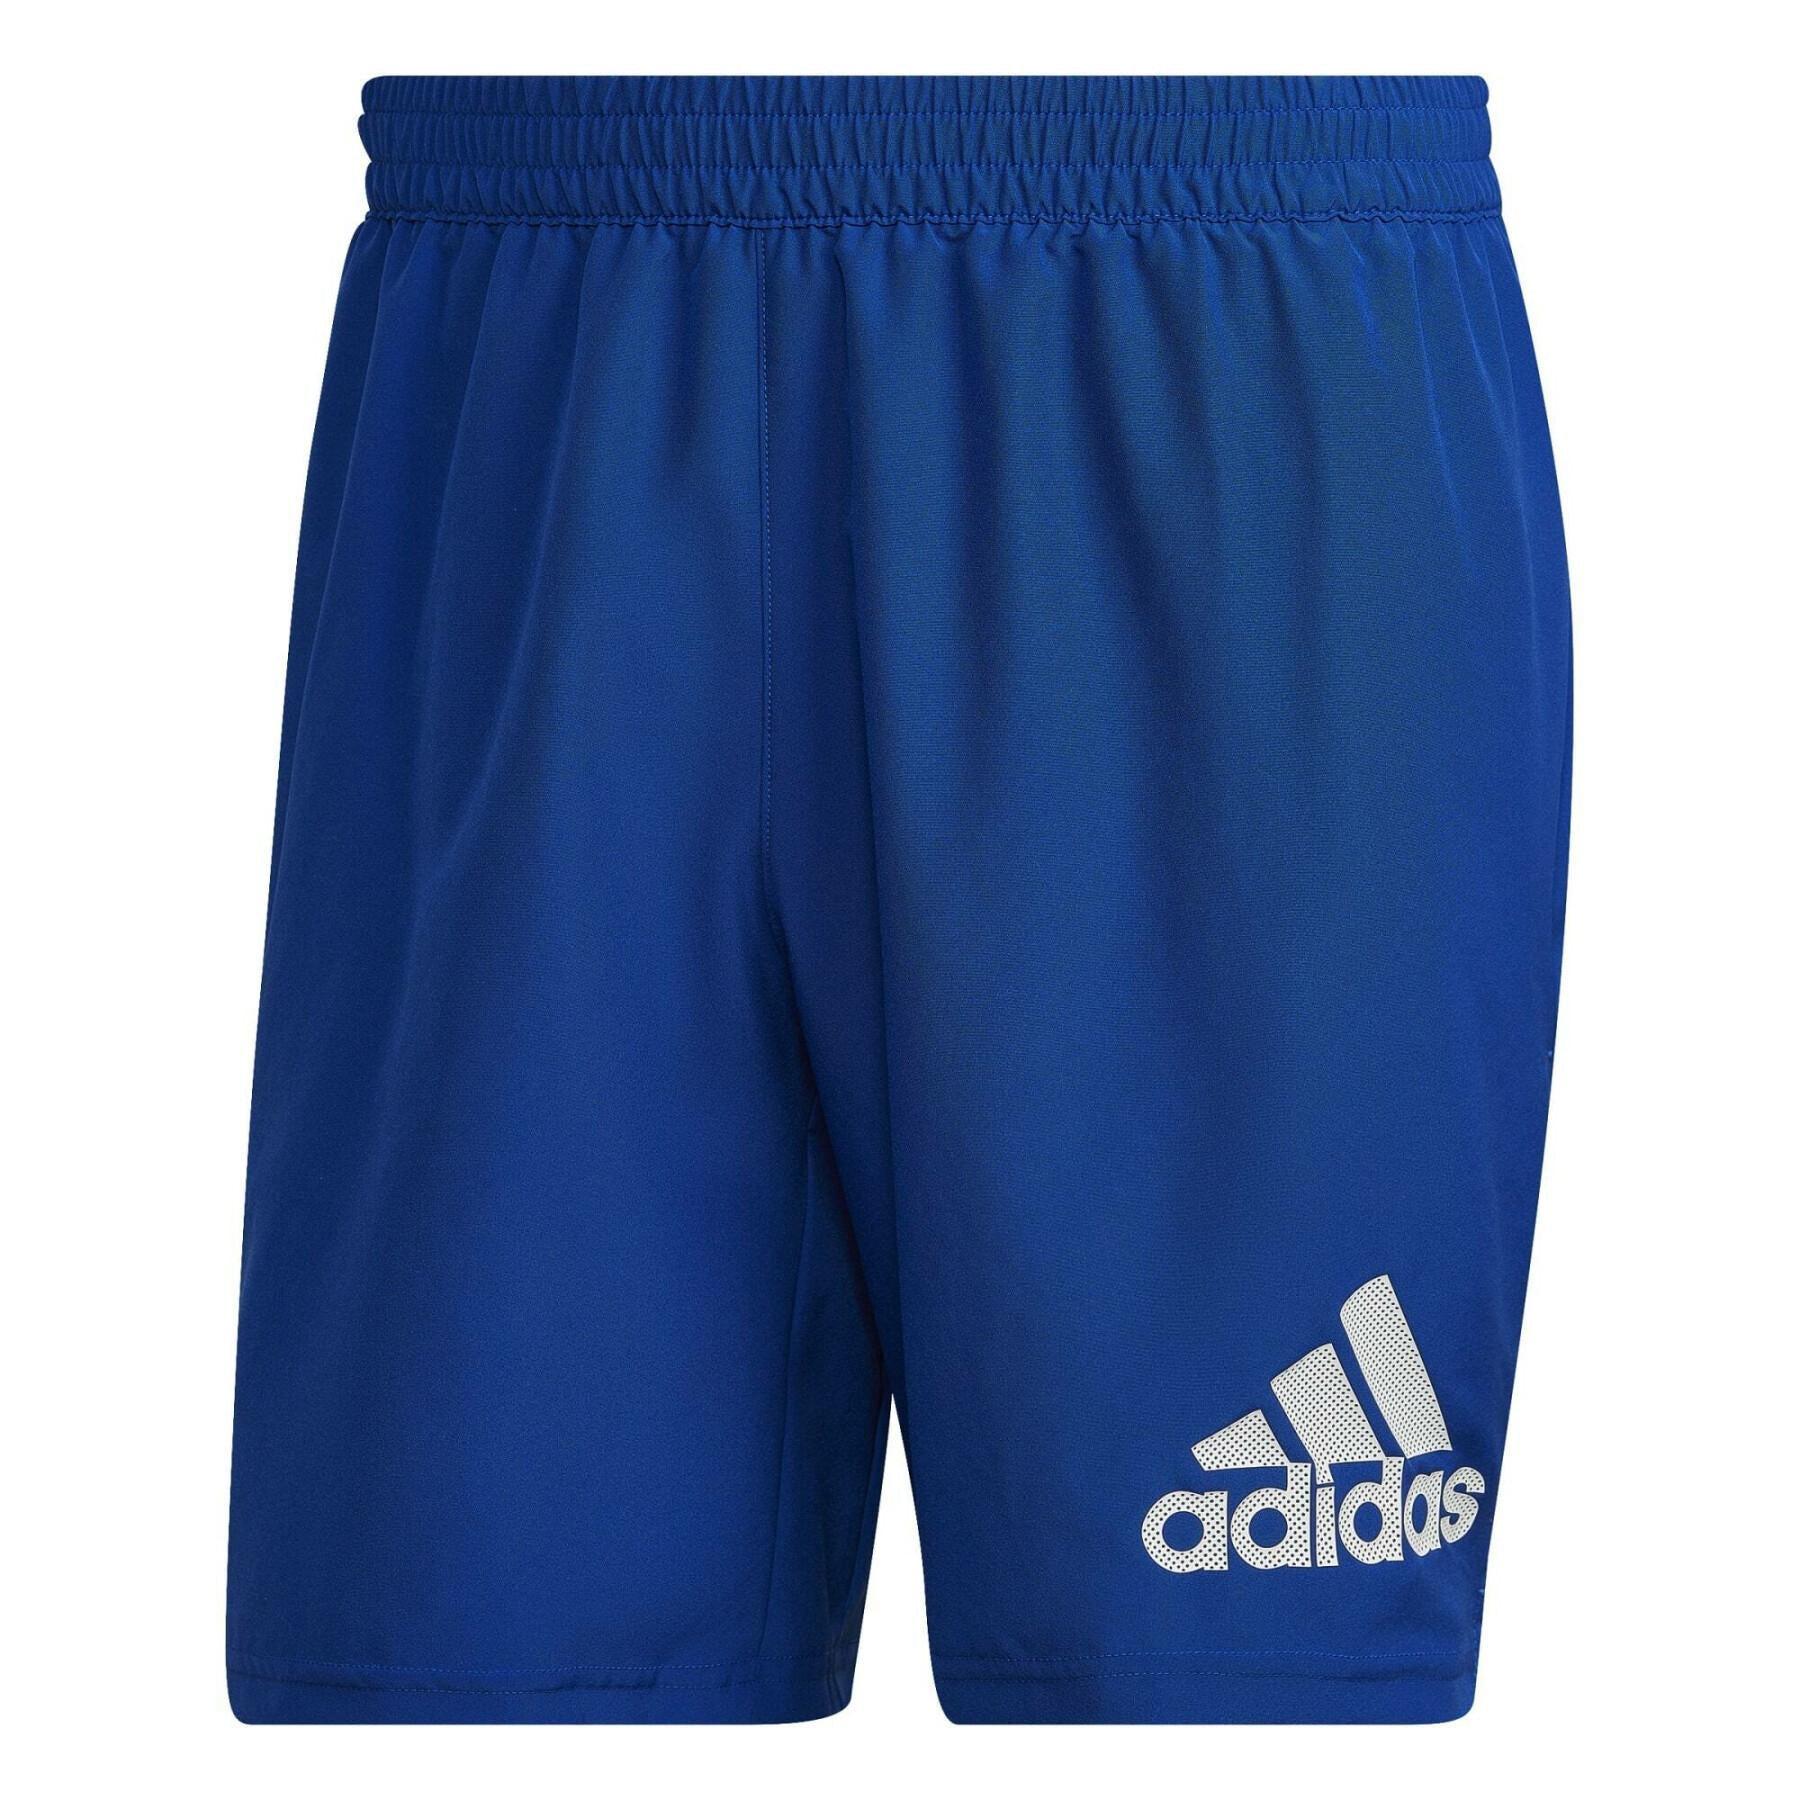 Adidas Men's Run It Short 7in - Royal Blue-Bruntsfield Sports Online